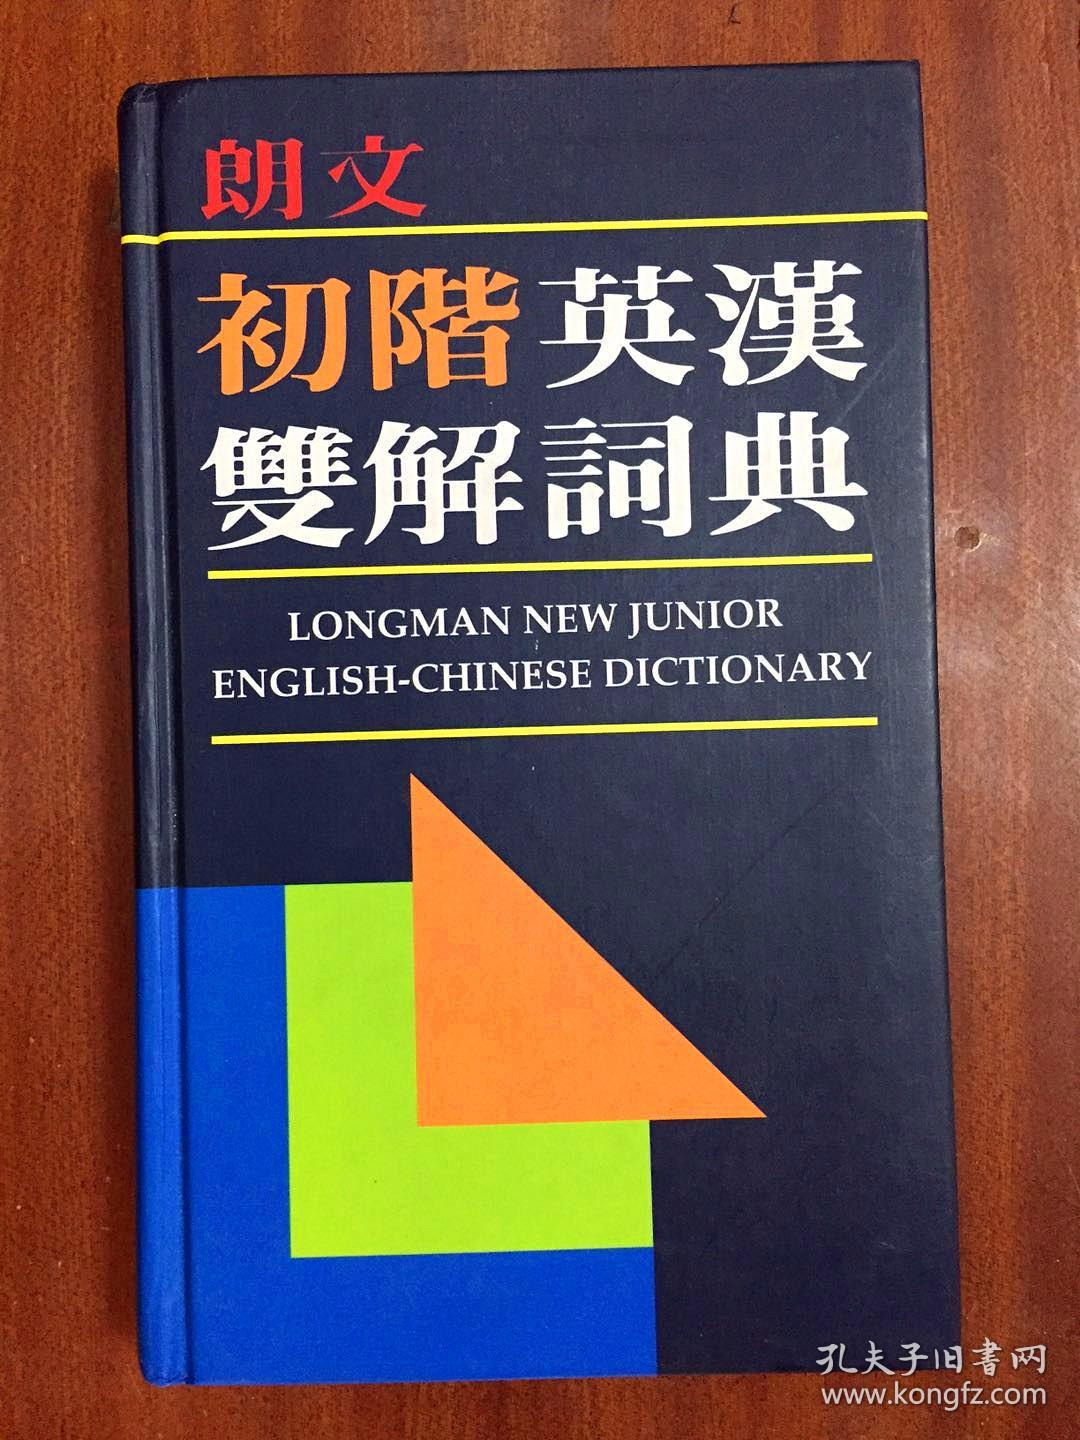 库存无瑕疵 繁体字版 朗文初阶英汉双解词典(第一版) LONGMAN NEW JUNIOR ENGLISH-CHINESE DICTIONARY